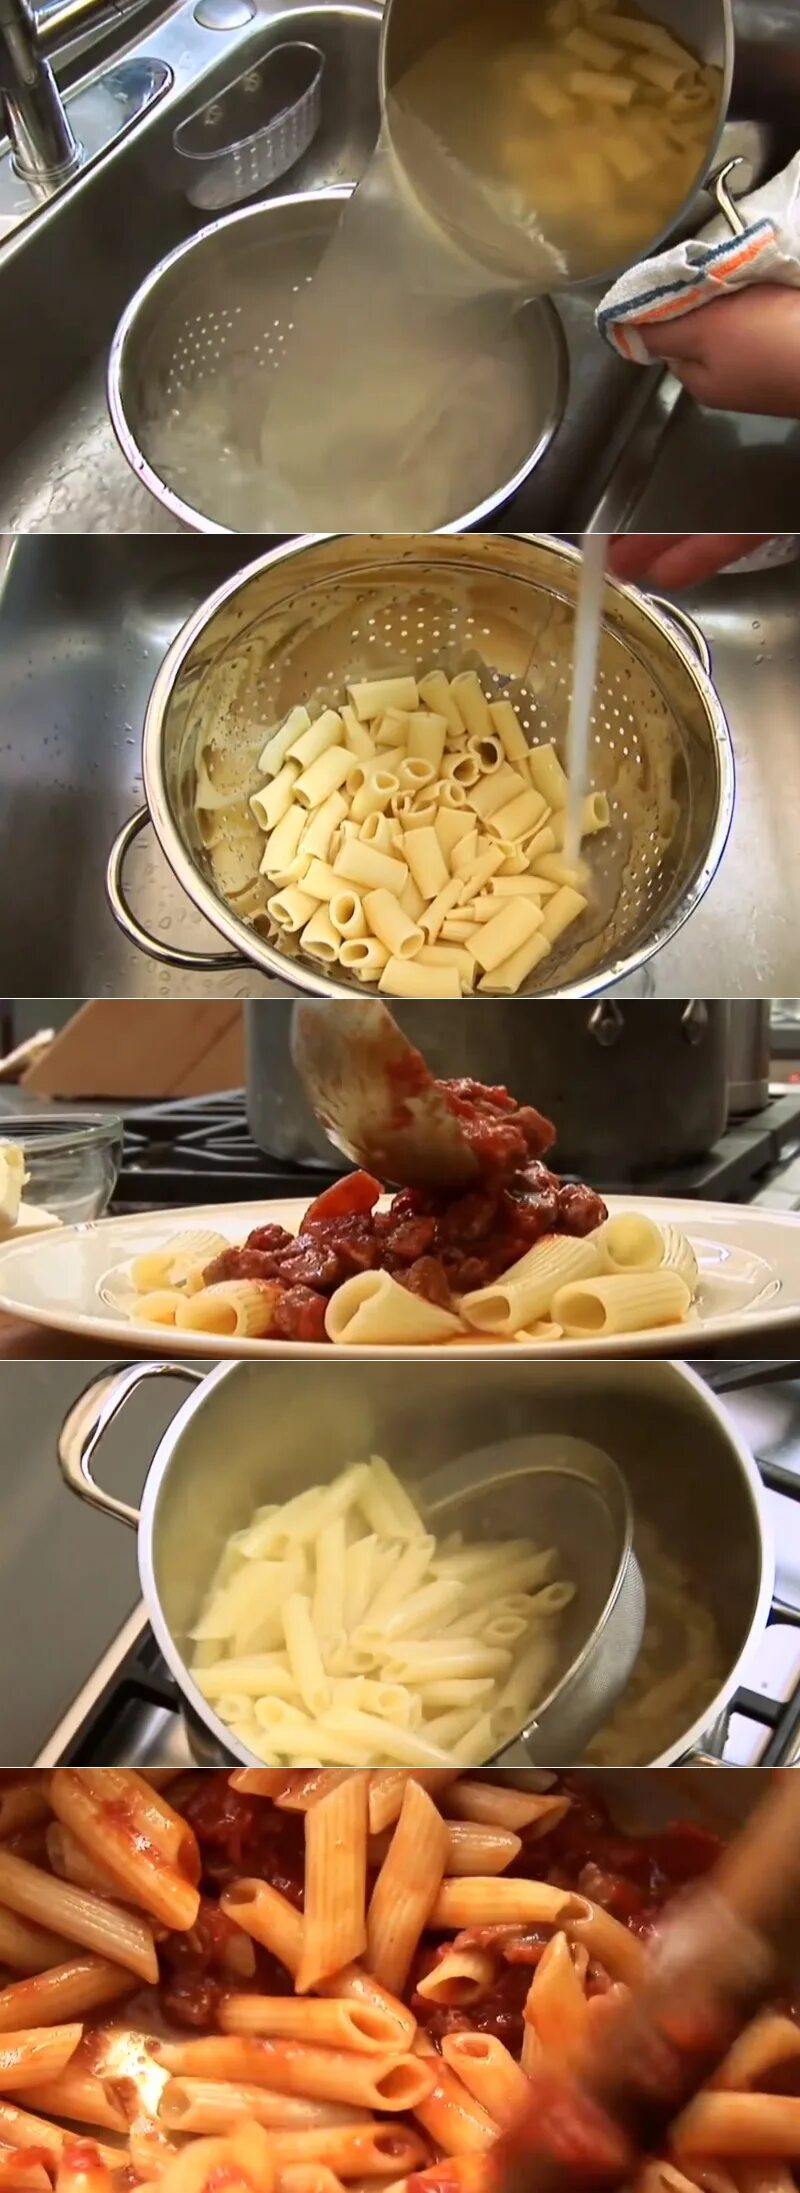 Сколько времени варятся макароны. Проваренные макароны. Как варить макароны. Варка макарон правильная. Поэтапная готовка макарон.